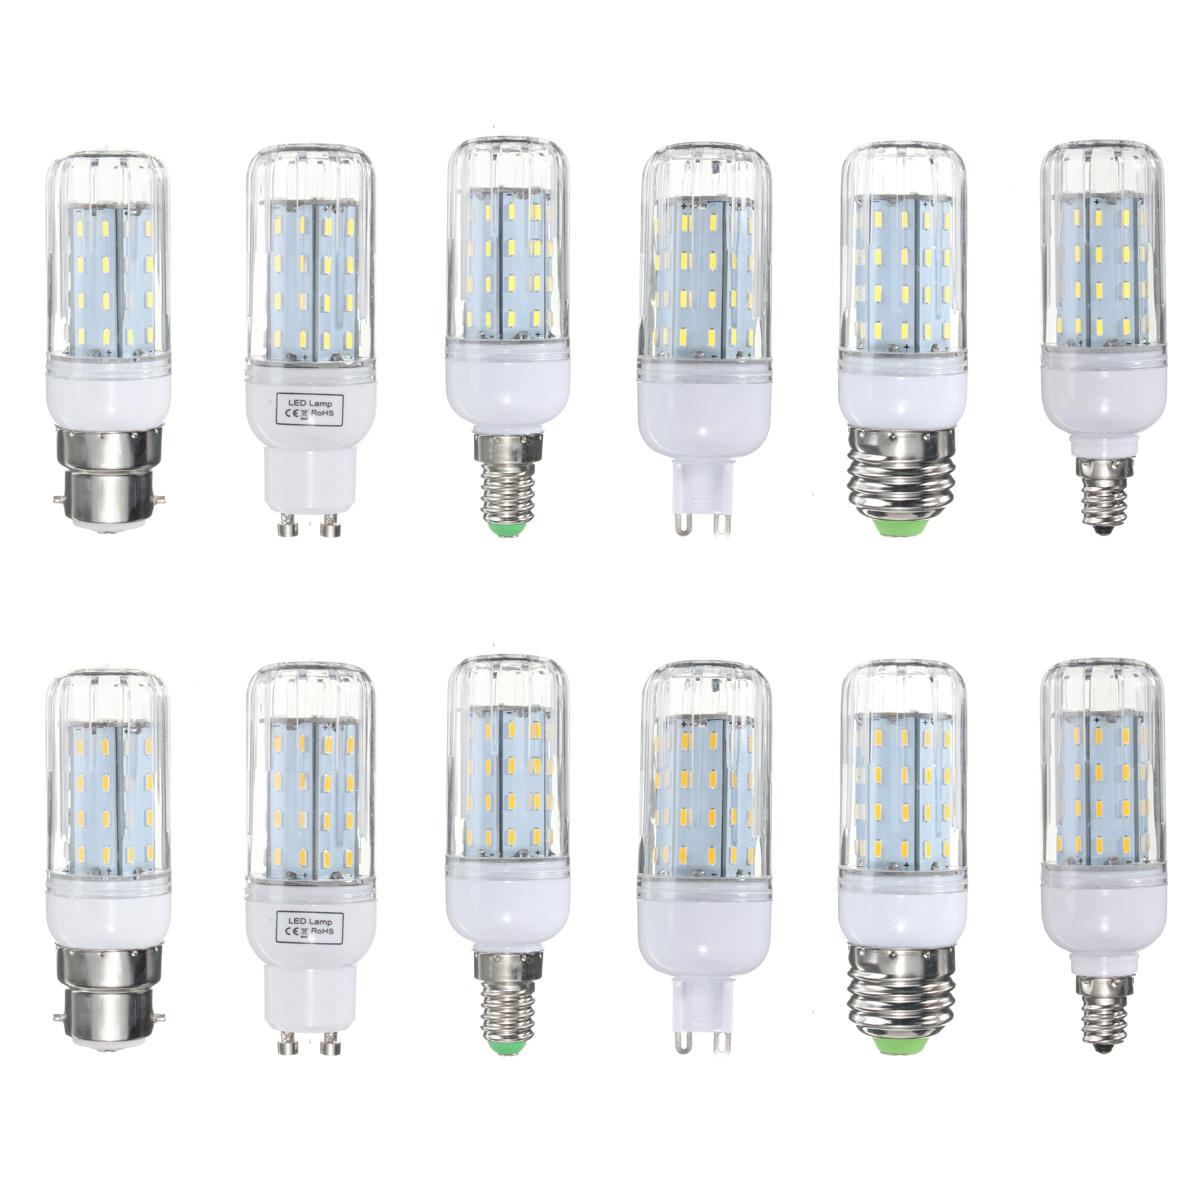 

E27 E14 E12 B22 G9 GU10 6W 56 SMD 4014 LED Warm White White Cover Corn Light Lamp Bulb AC 220V